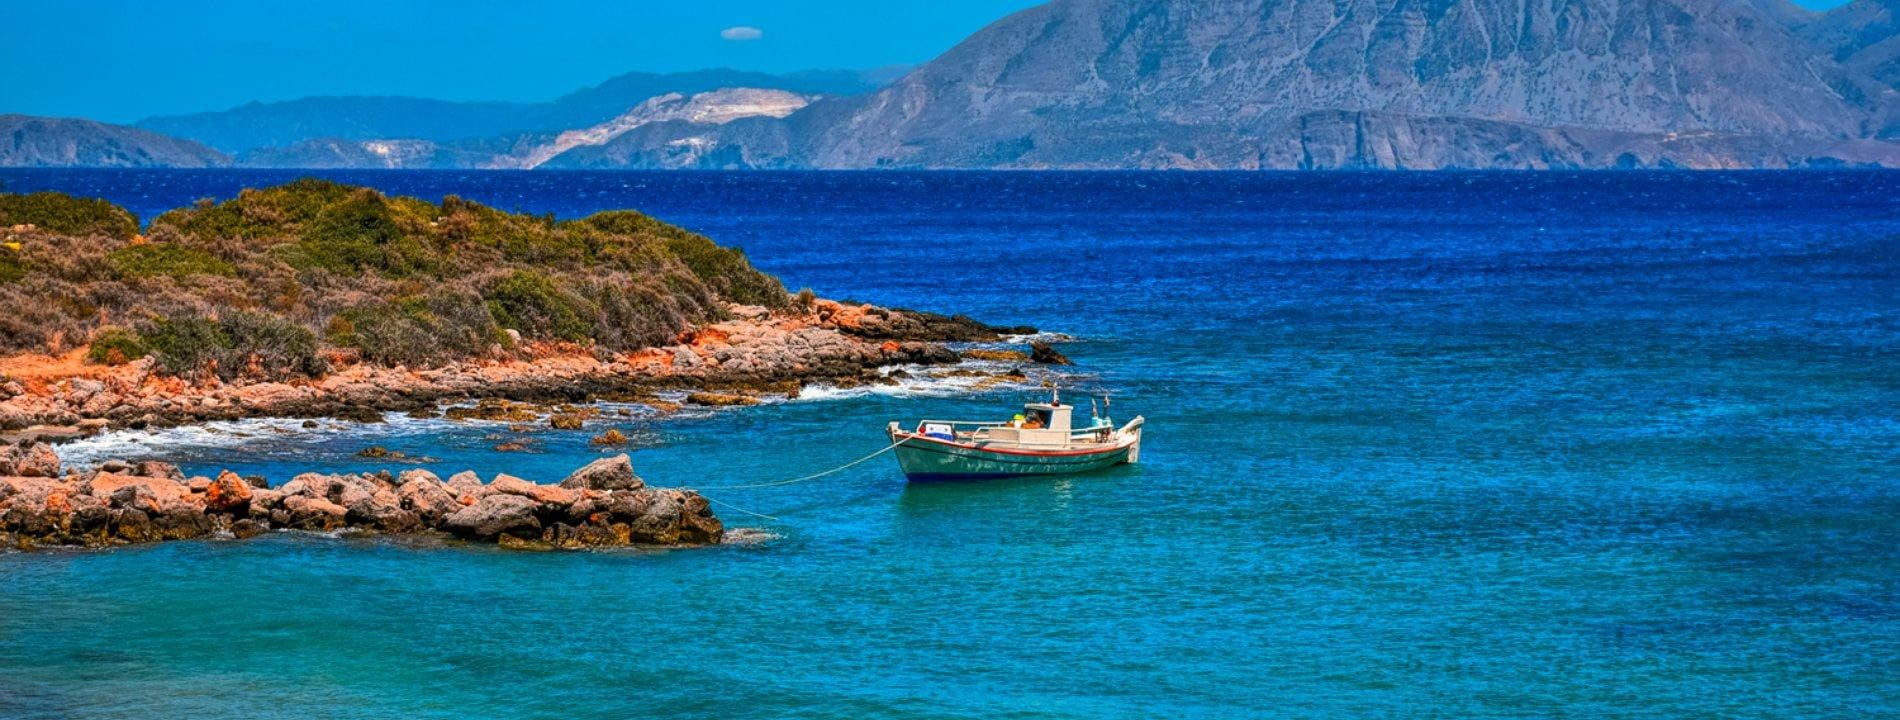 Vacanze a Creta | Eden Viaggi